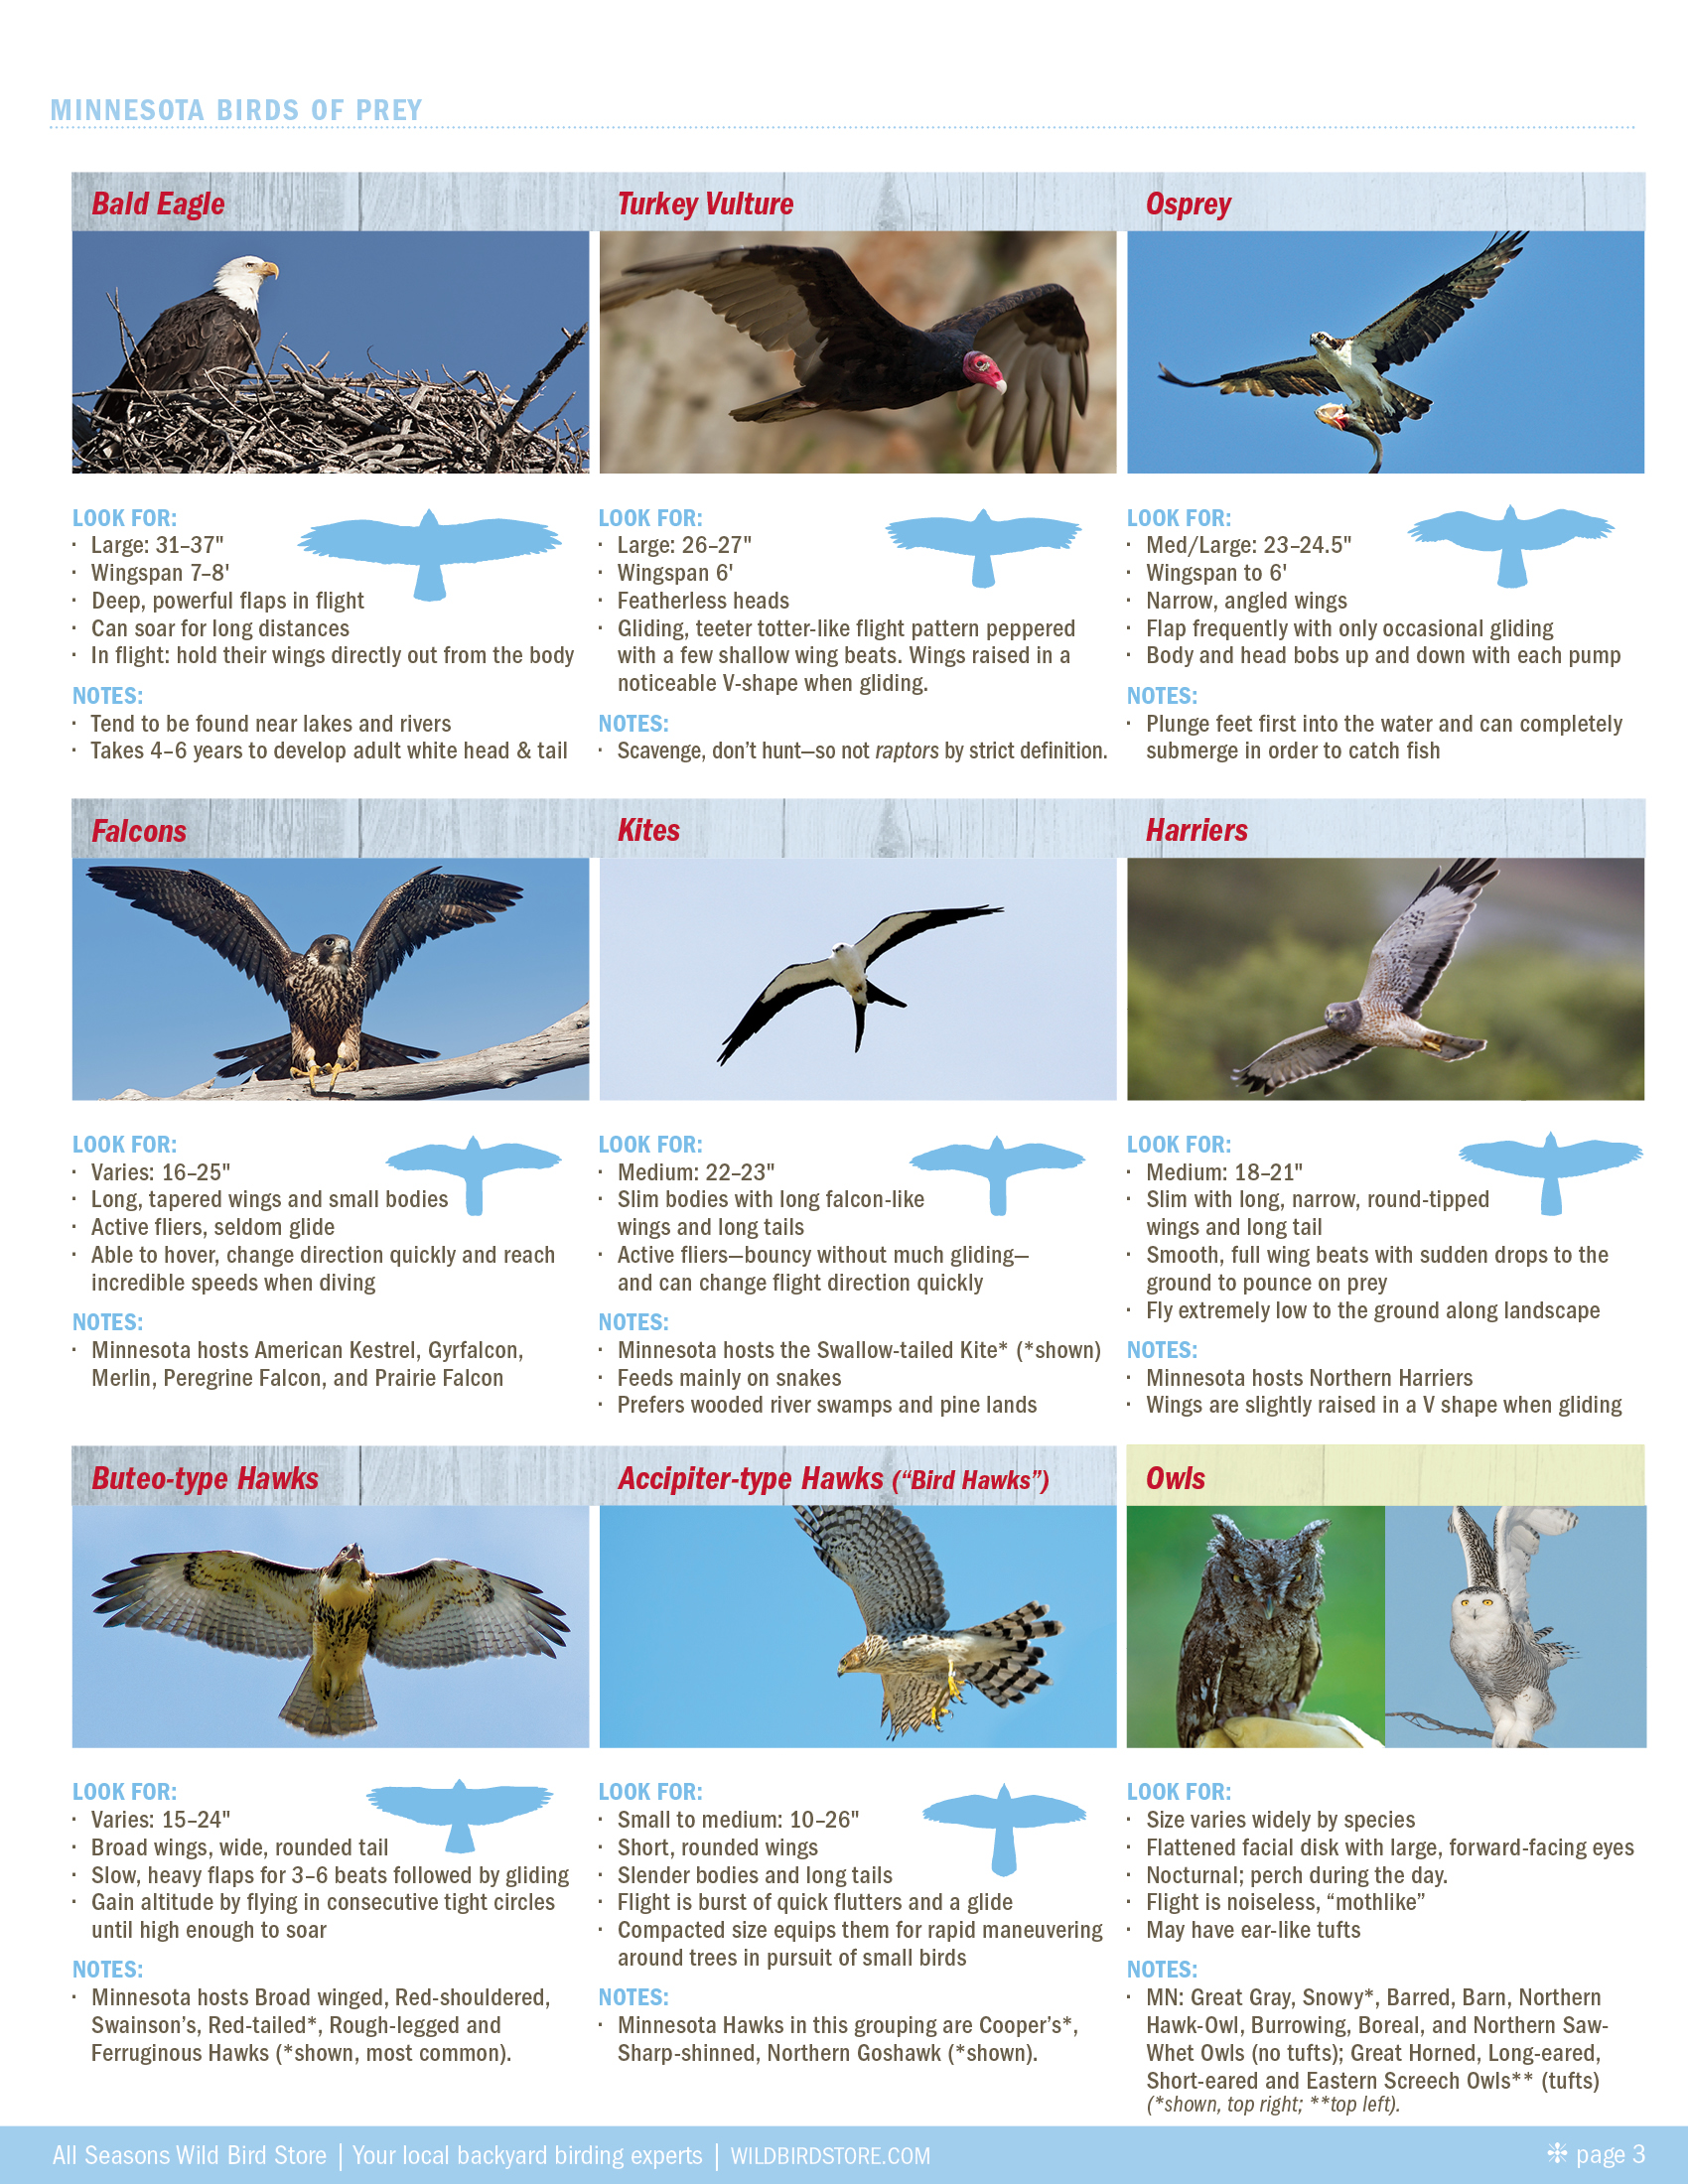 Identifying Raptors - How to Differentiate Birds of Prey